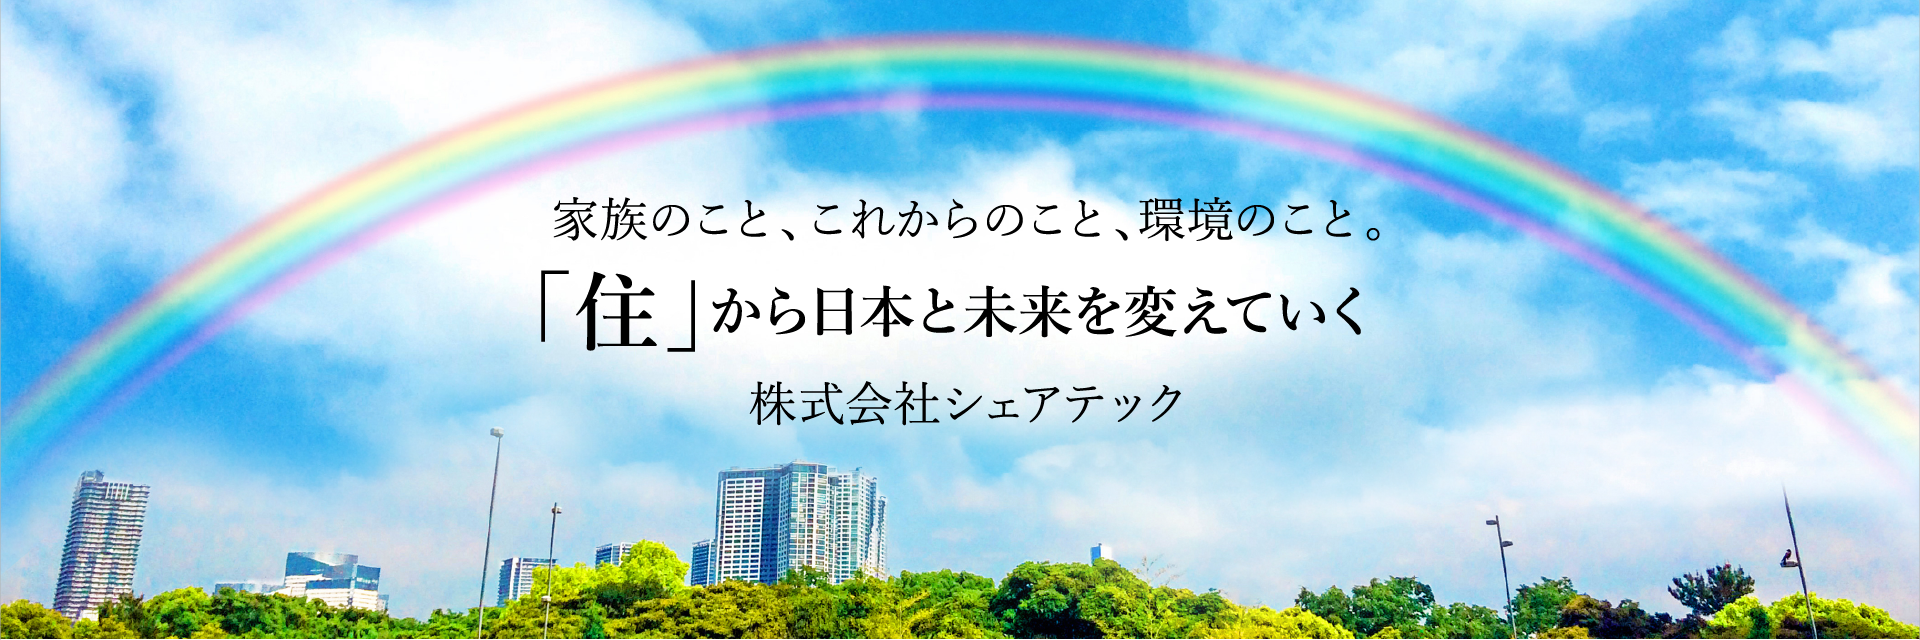 家族のこと、これからのこと、環境のこと。「住」から日本と未来を変えていく株式会社シェアテック